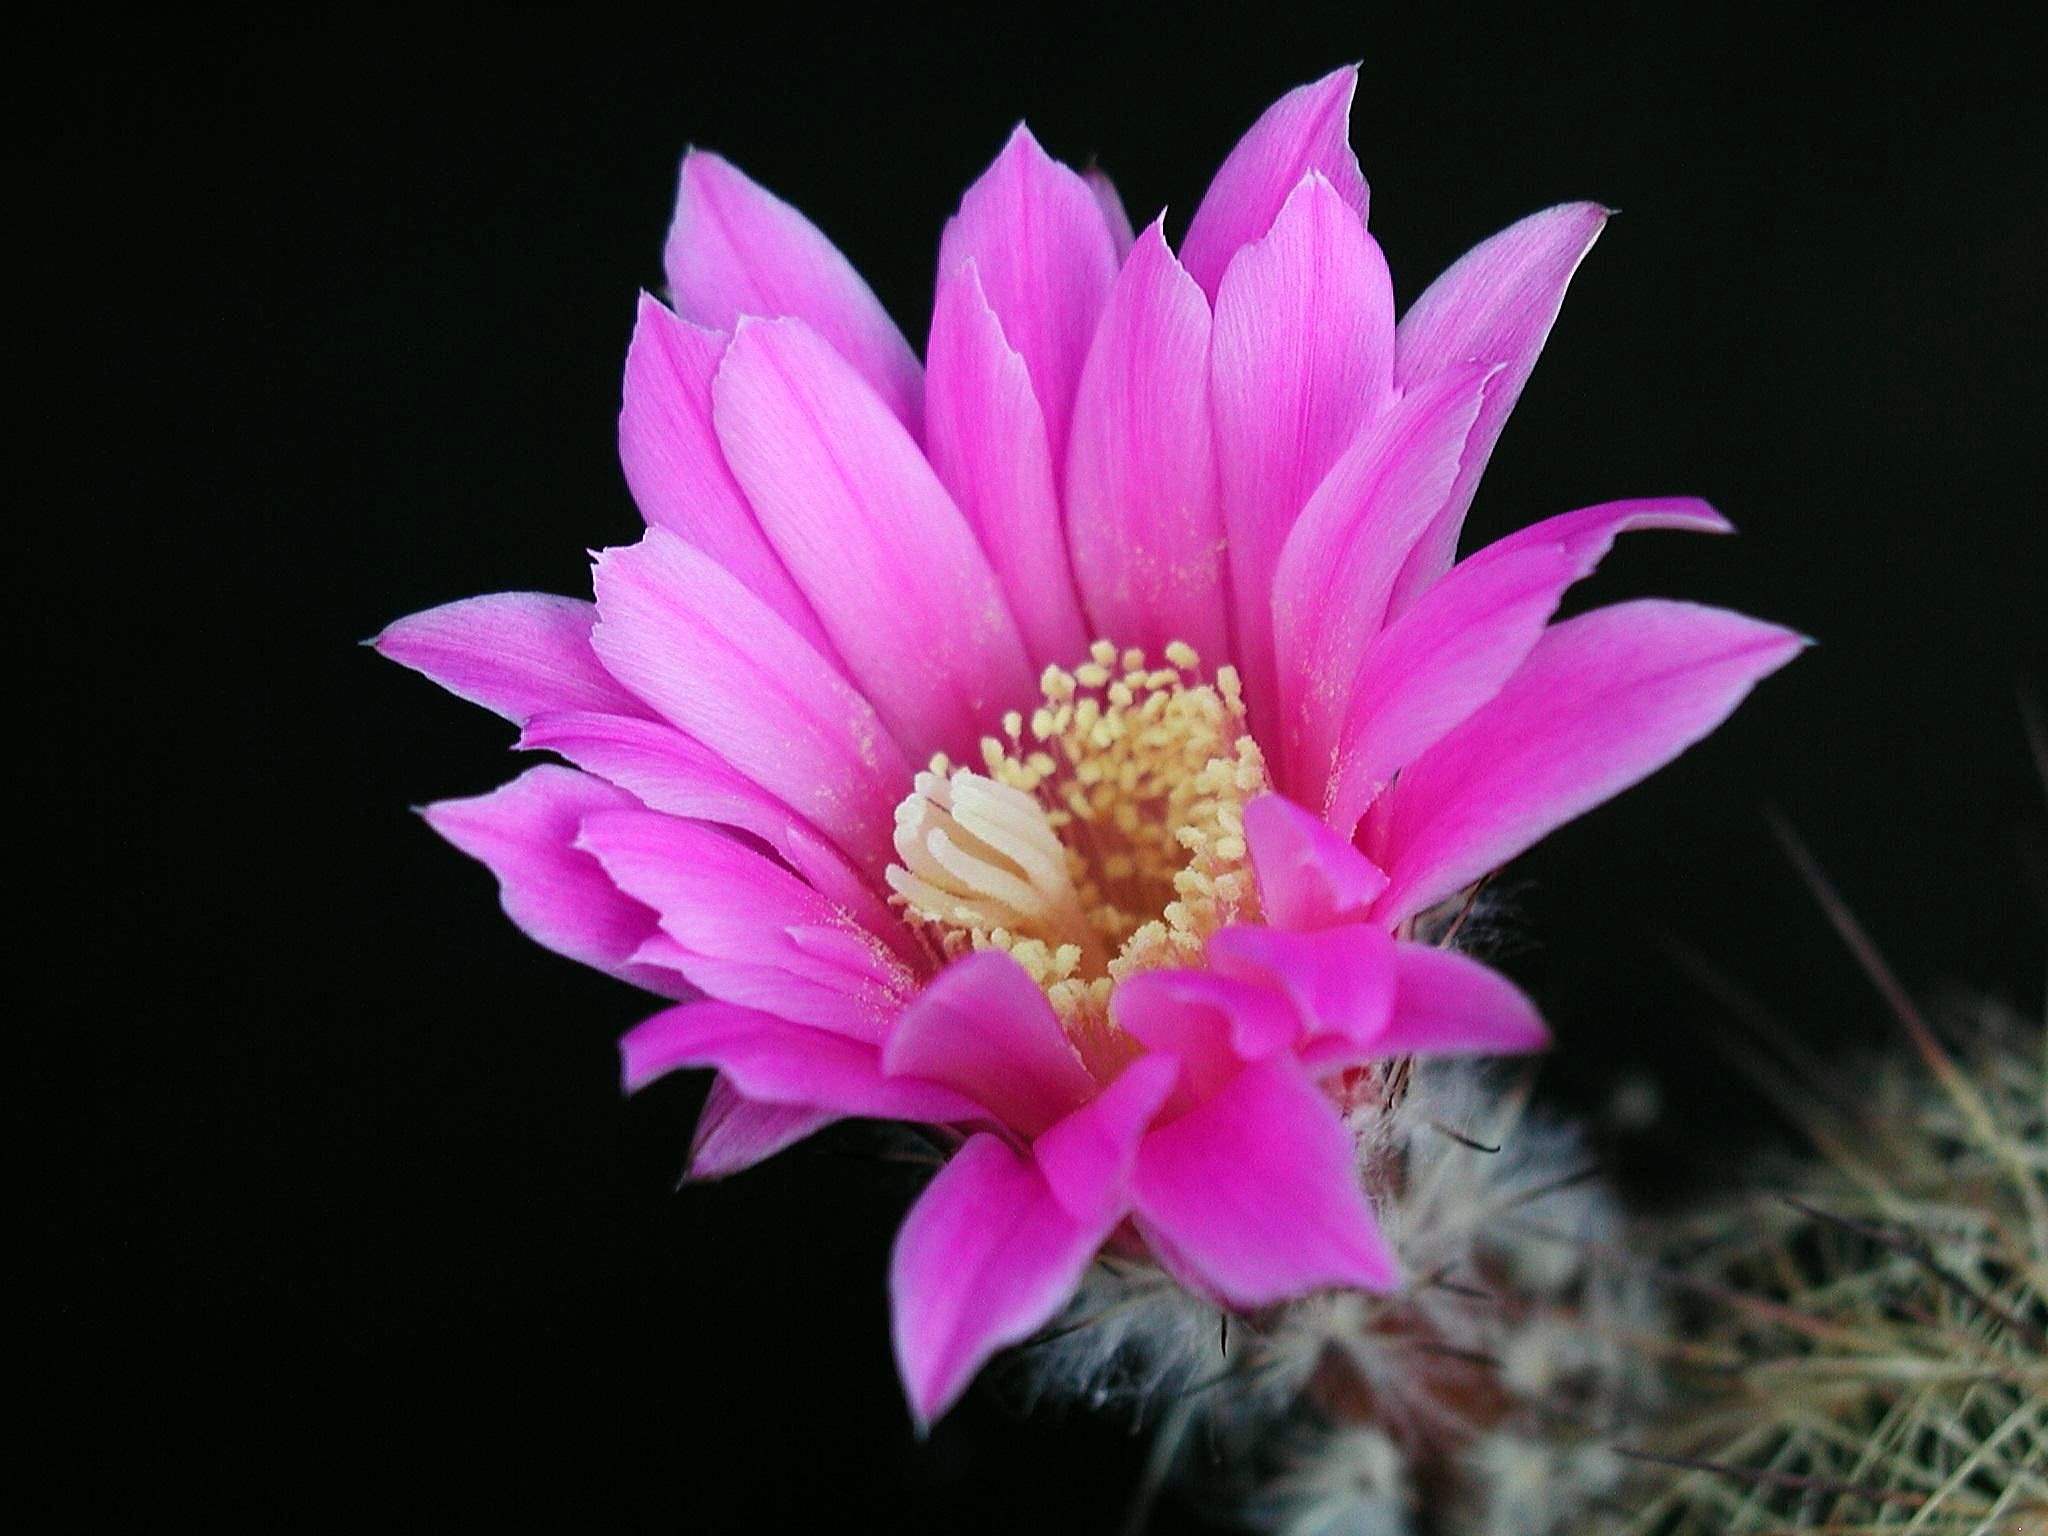 Cactus flower photo